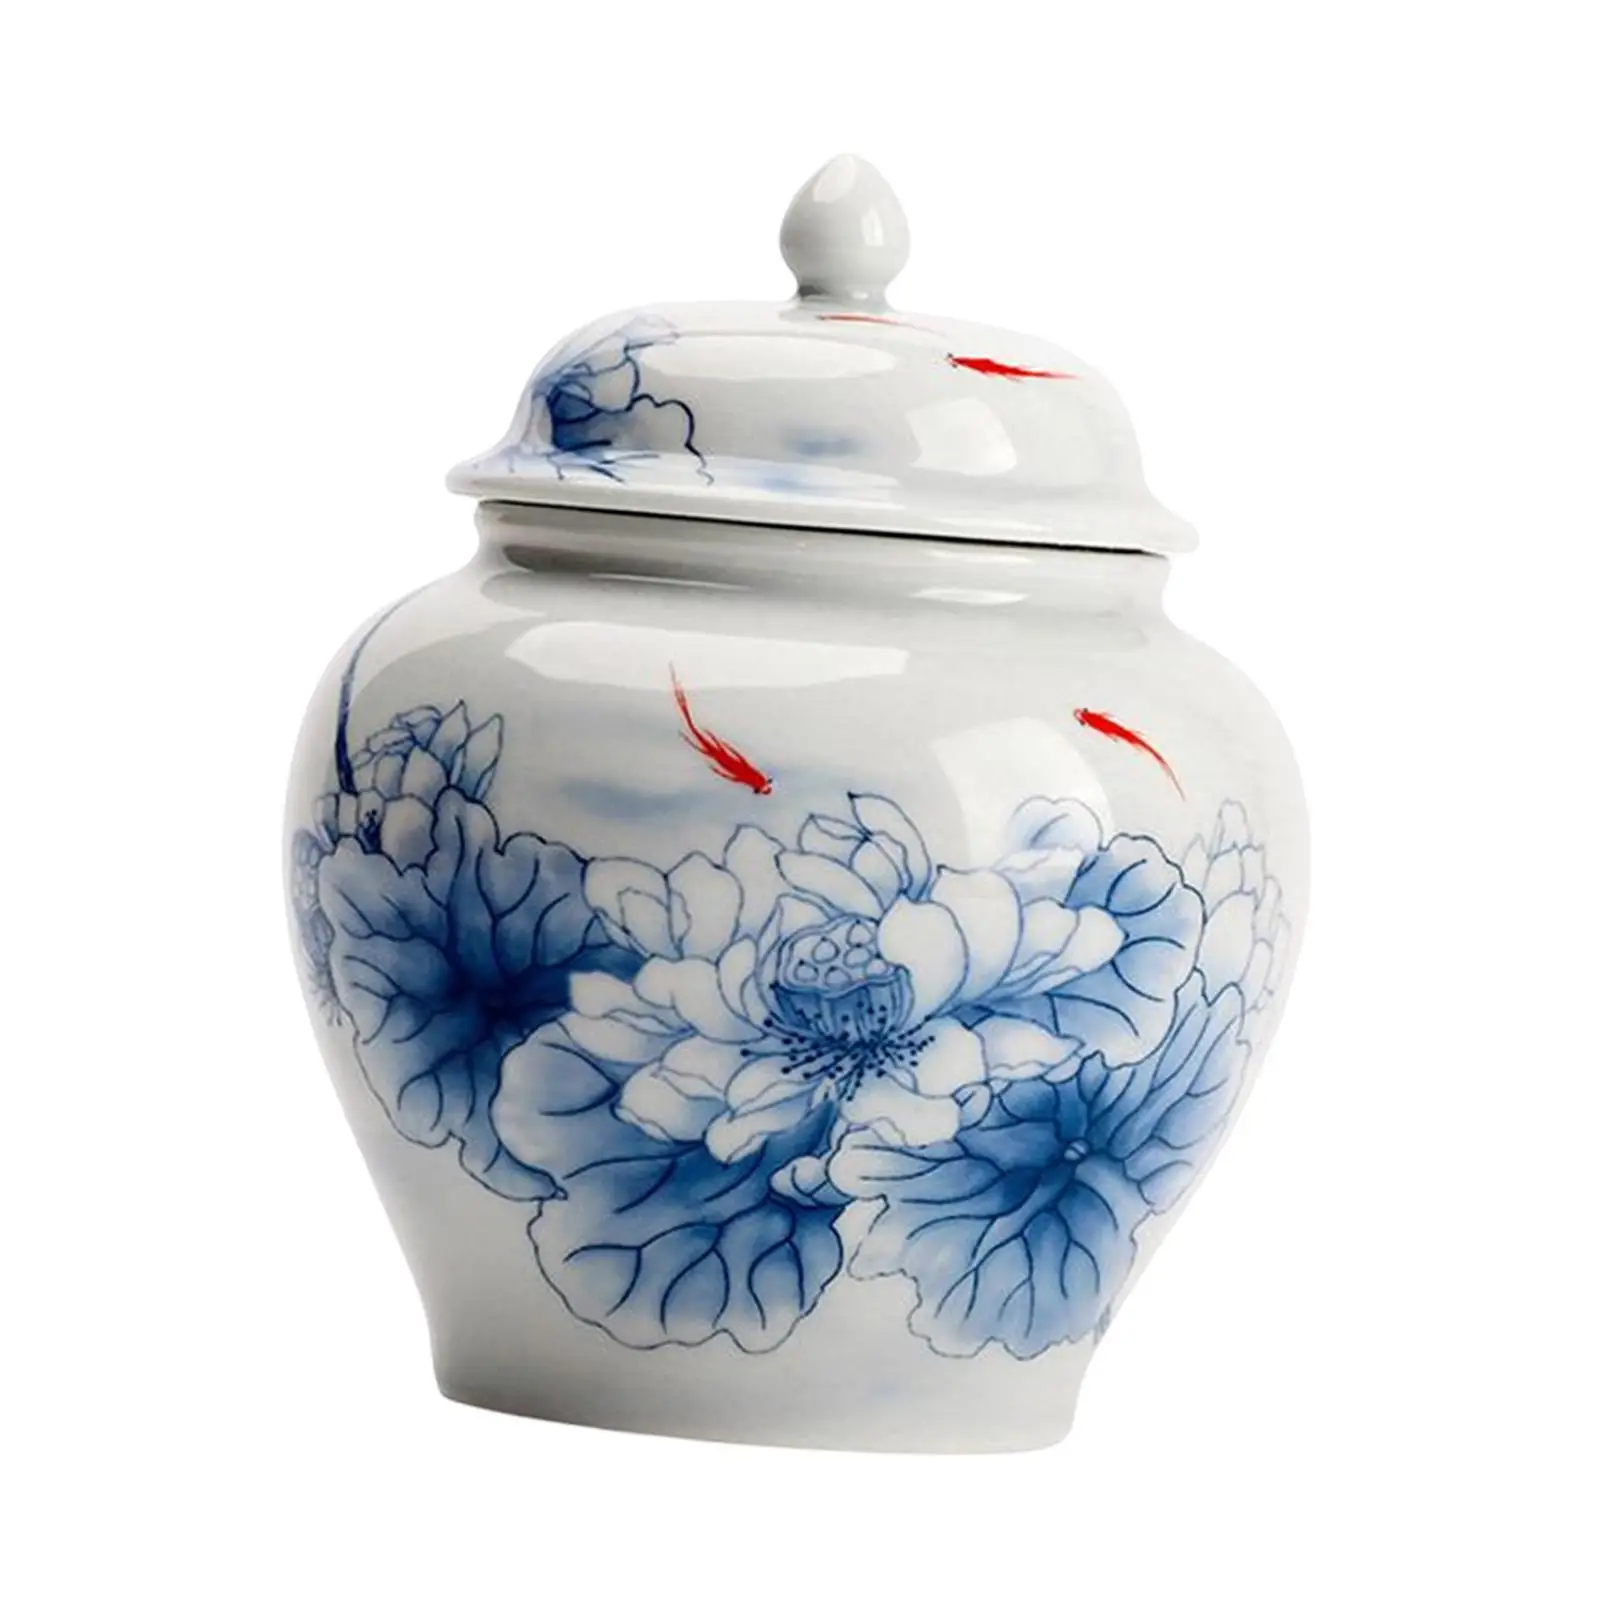 Blue and White Porcelain Ginger Jar Storage Jar Decorative Flower Vase